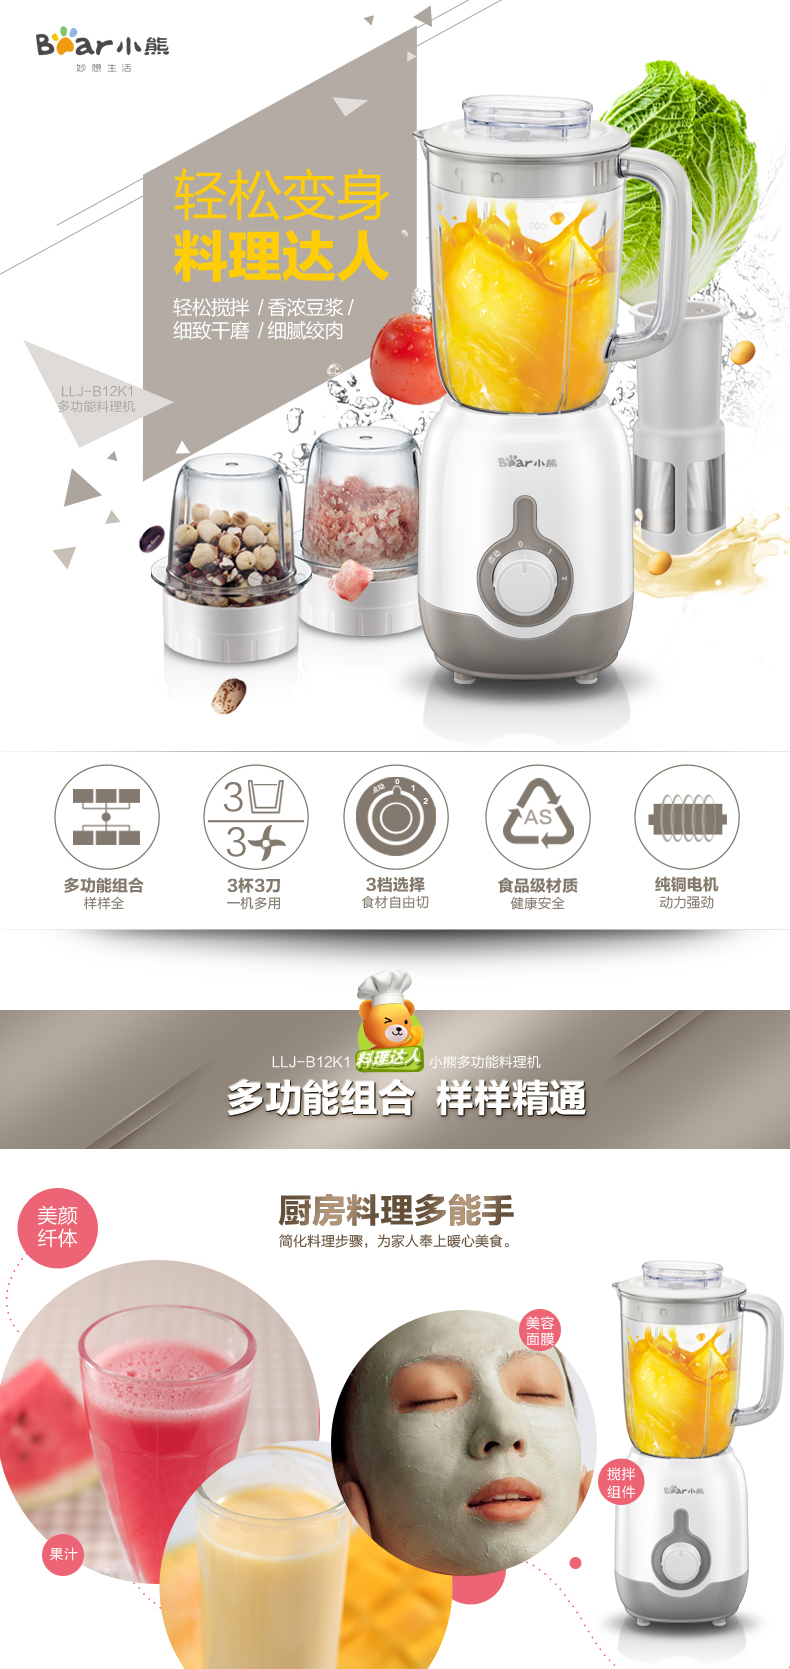 Bear/小熊 LLJ-B12K1 料理机家用辅食豆浆榨果汁多功能搅拌机